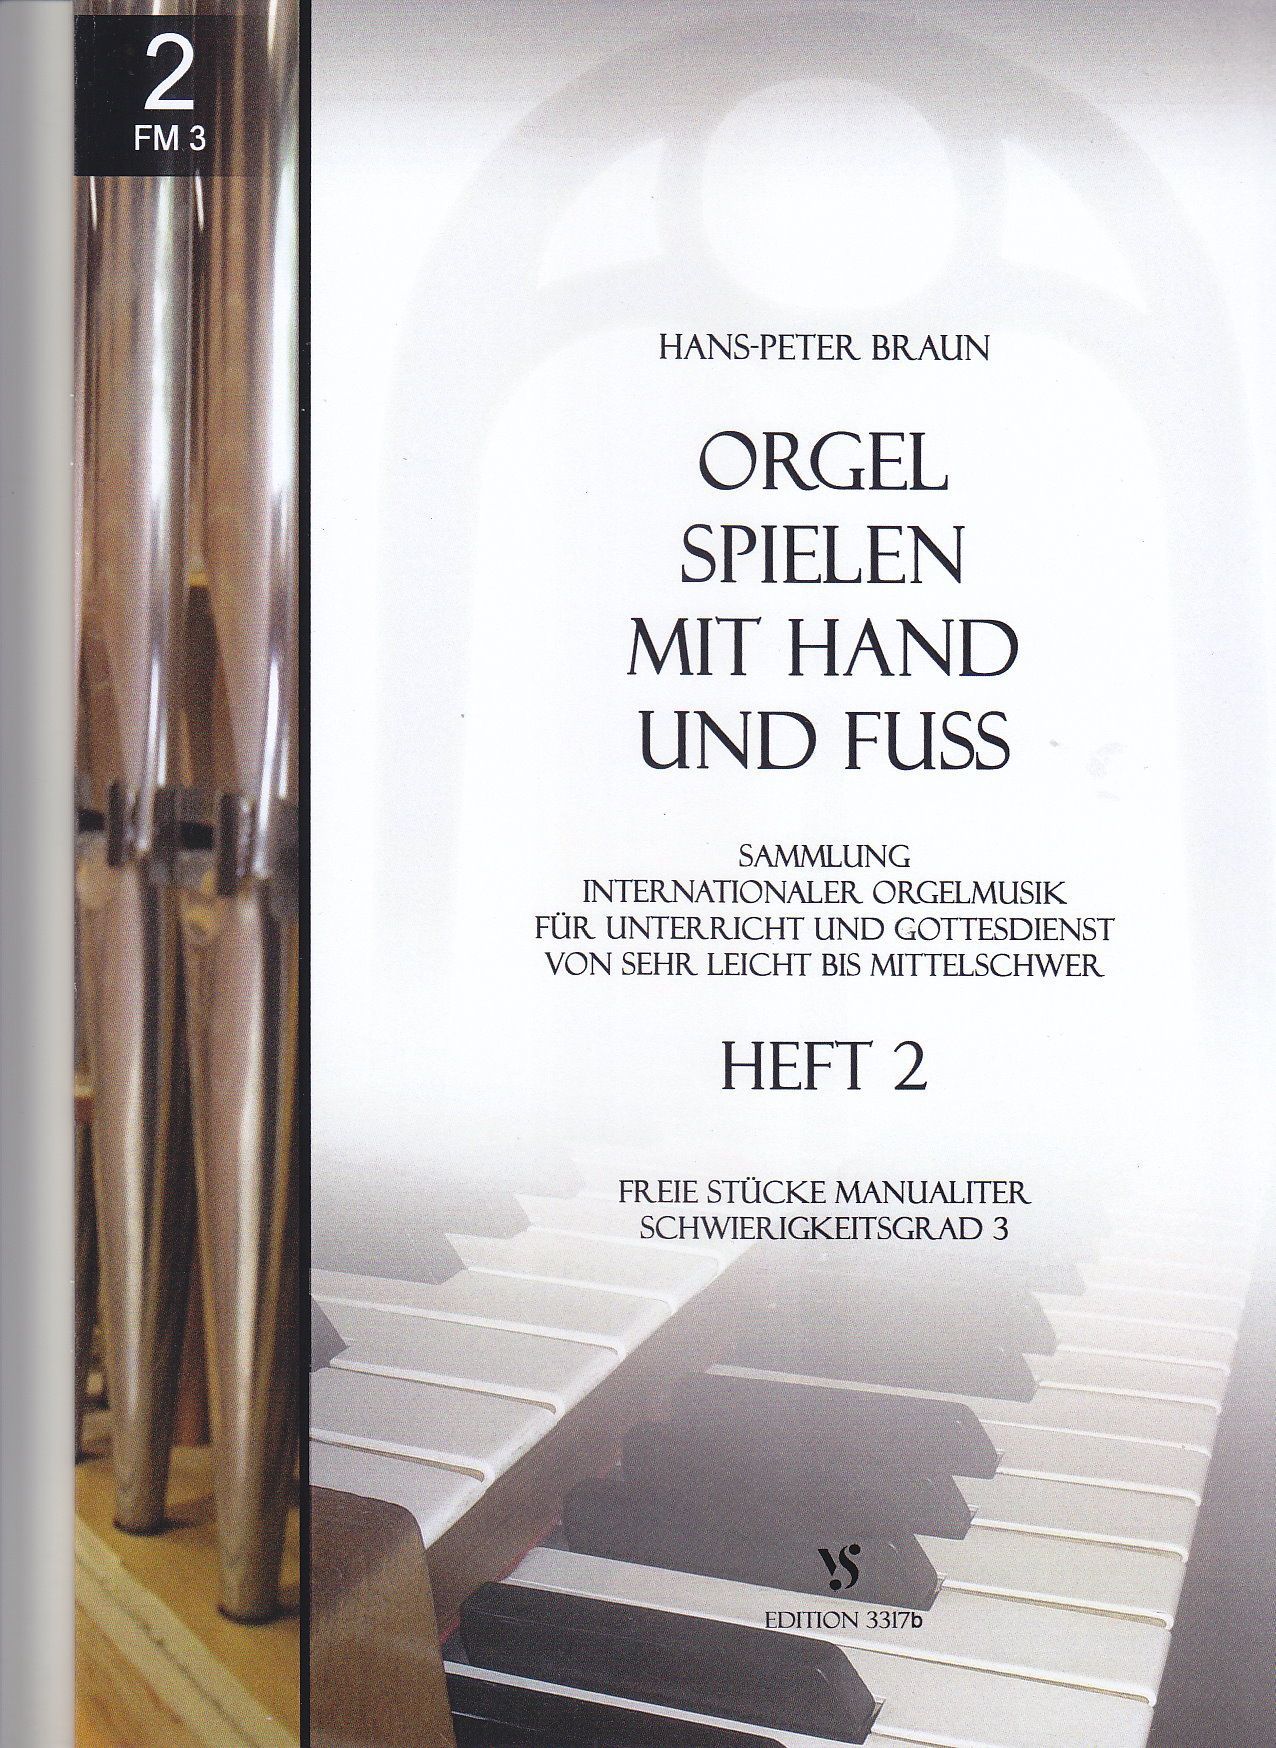 Noten Orgel spielen mit Hand und Fuss 2 Strube 3317B Hans Peter Braun manualiter  - Onlineshop Musikhaus Markstein